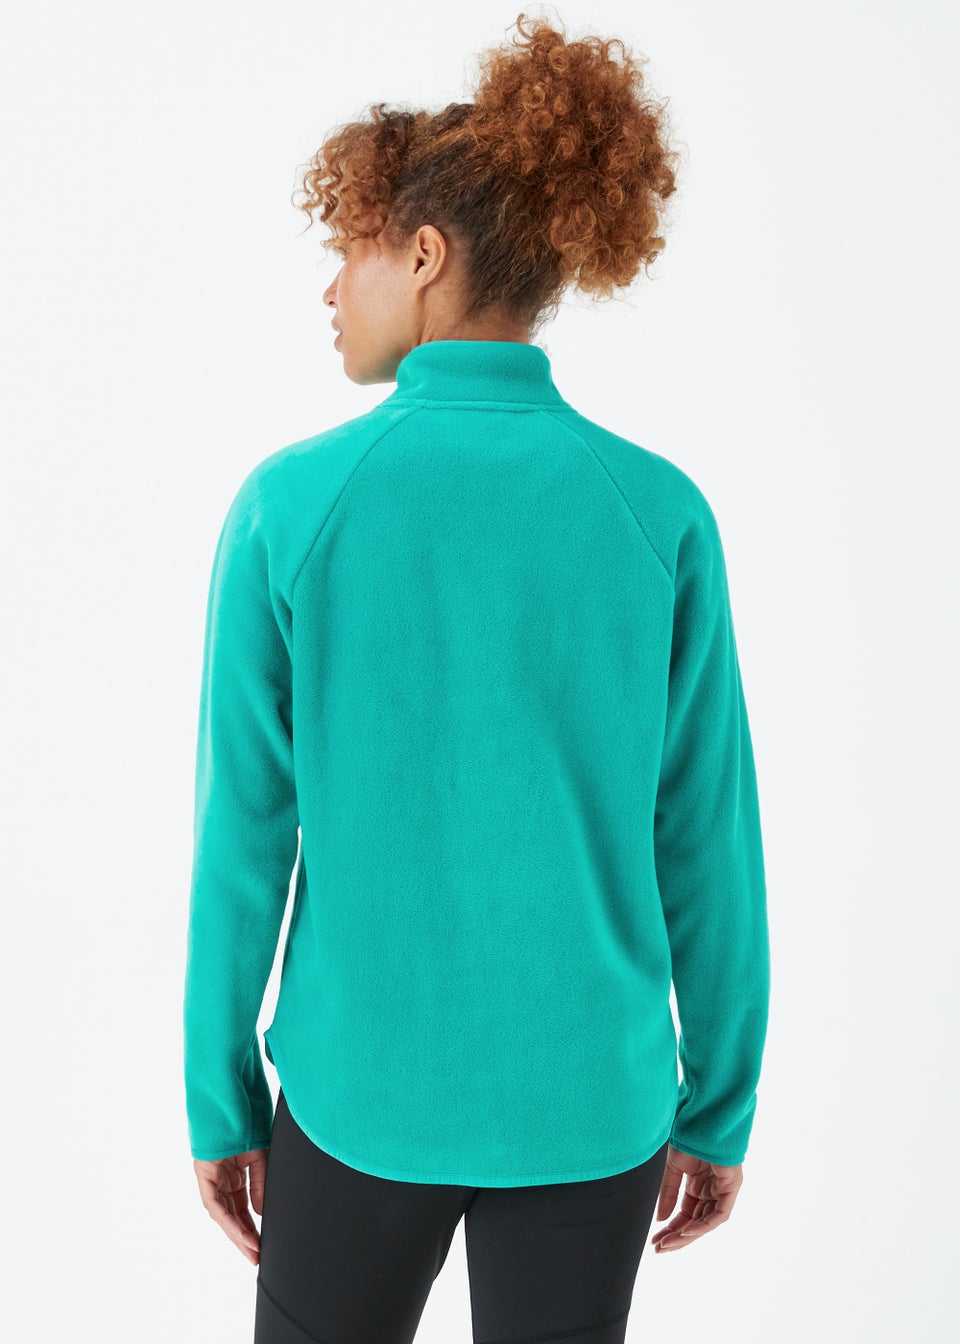 Green Zip Up Polar Fleece Sports Jacket